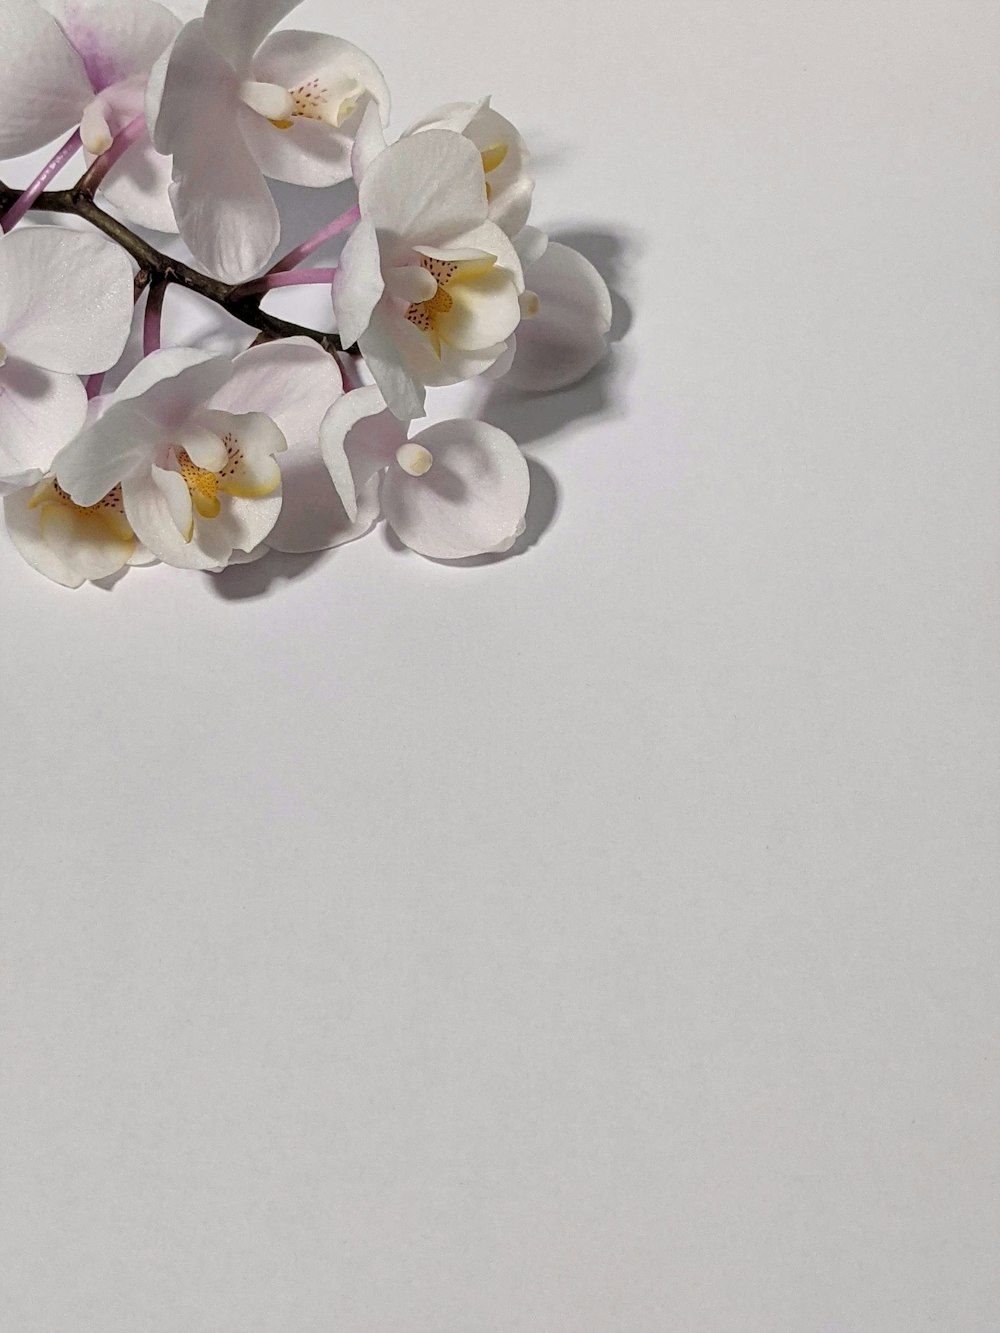 Orquídeas polilla blanca sobre superficie blanca